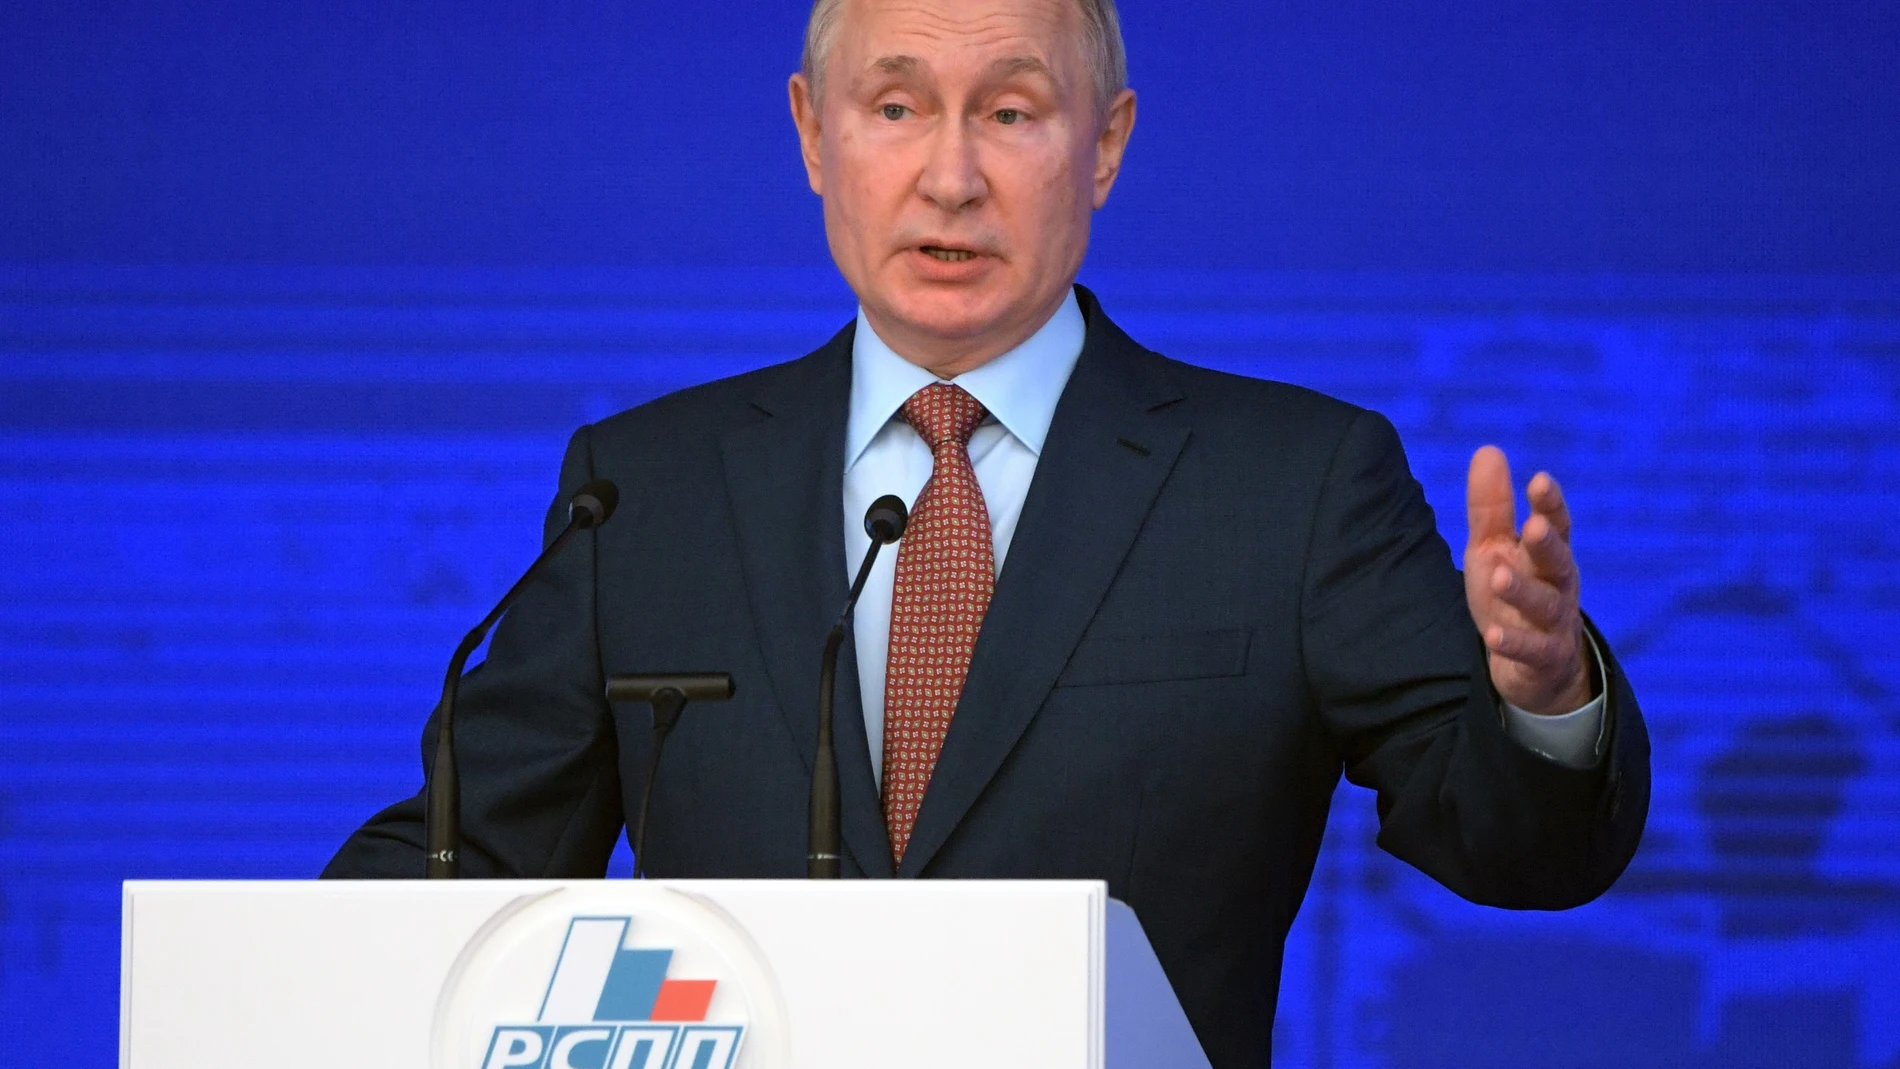 El presidente ruso, Vladimir Putin, ha exigido que Occidente debe proporcionar al país “garantías legales” para la seguridad del país, así como “quitar las manos” de la región ucraniana